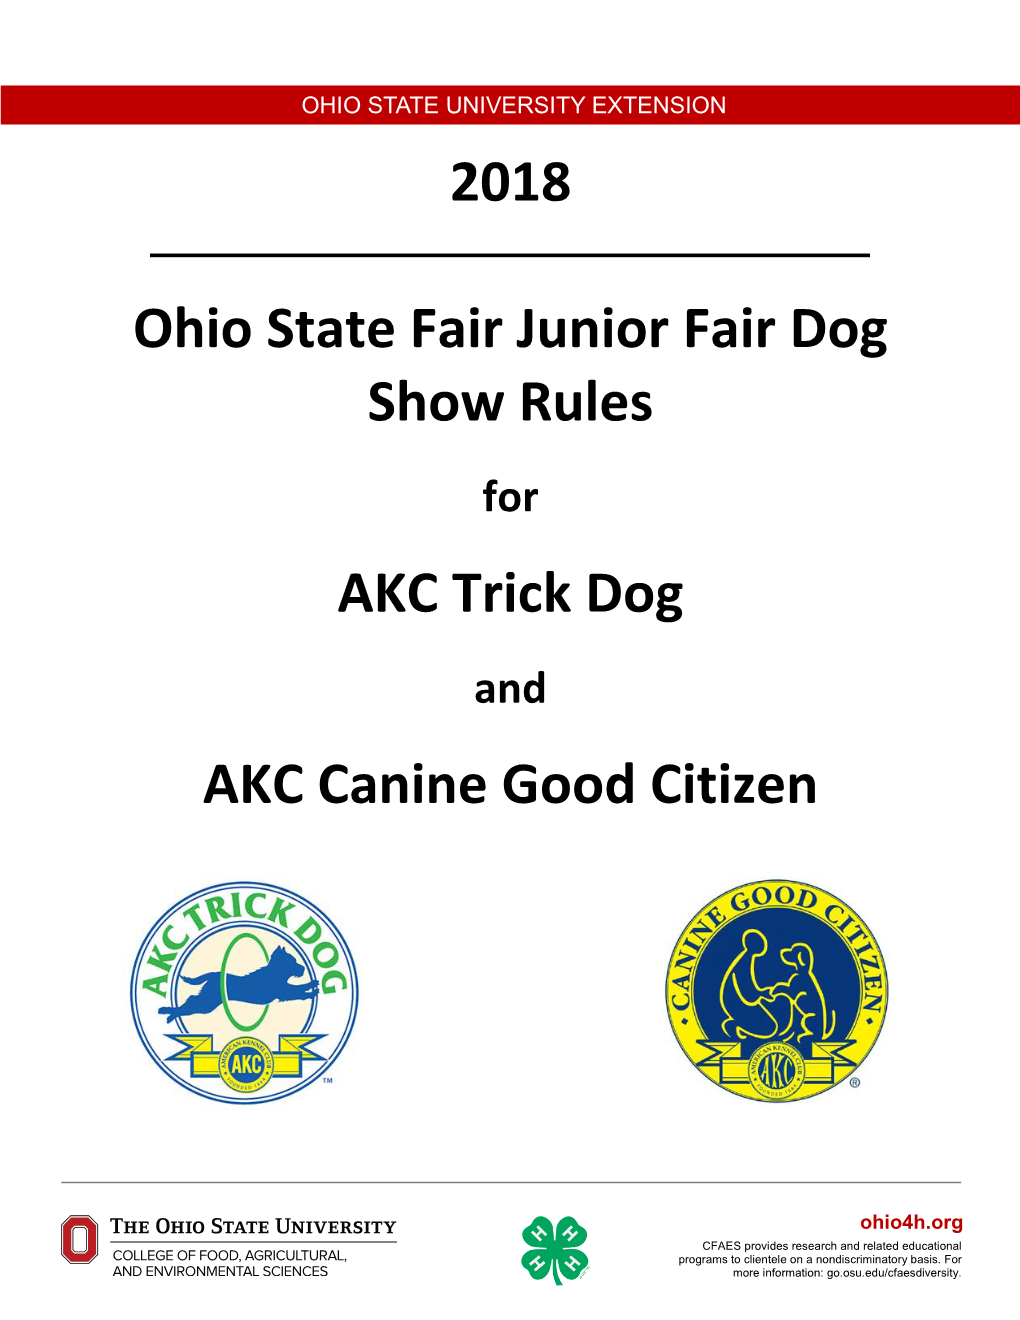 2018 Ohio State Fair Junior Fair Dog Show Rules AKC Trick Dog AKC